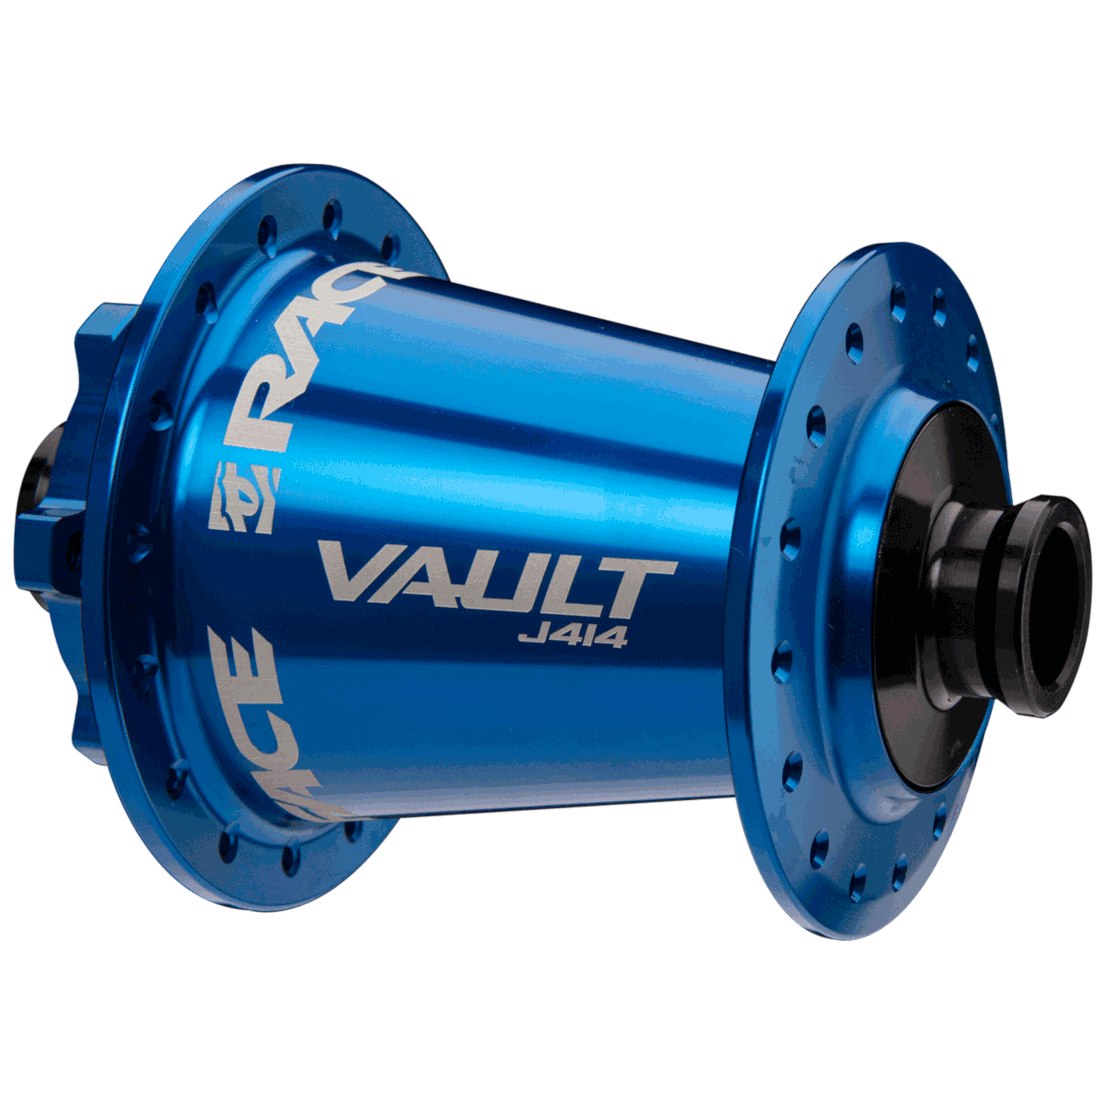 Produktbild von Race Face Vault J414 Vorderradnabe - 6-Loch - 15x110mm Boost - 32 Loch - dunkelblau hochglanz